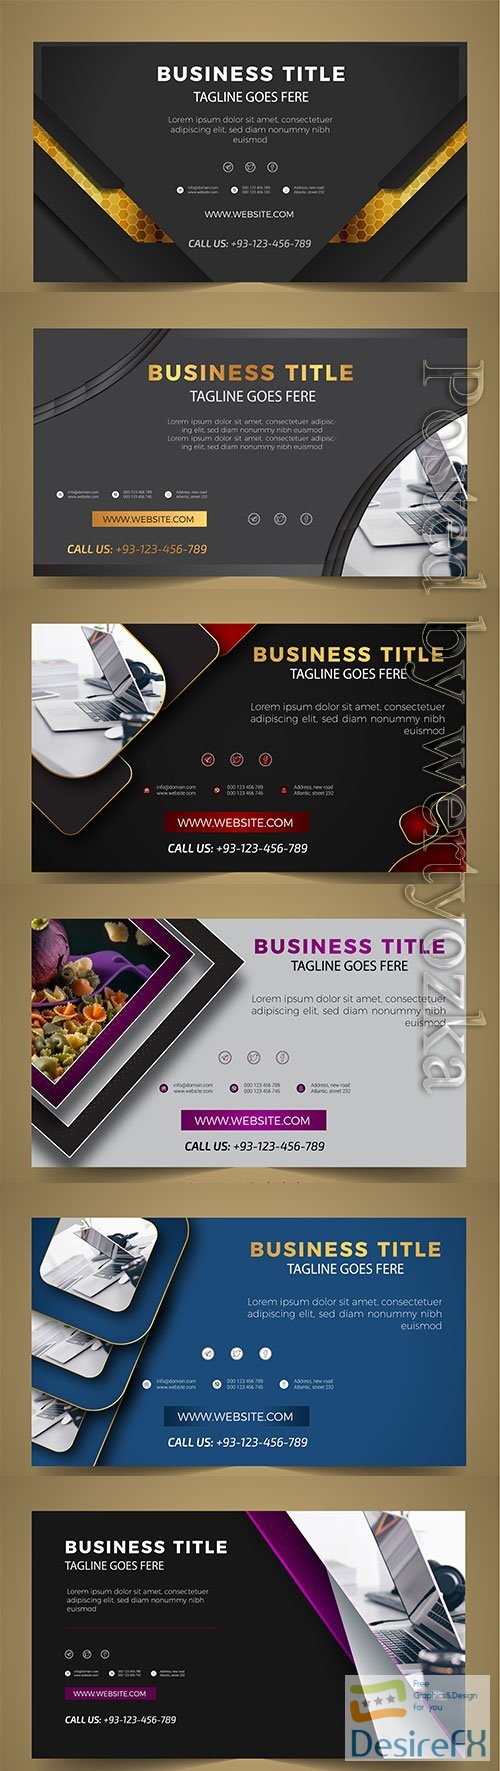 Modern business banner vector template design